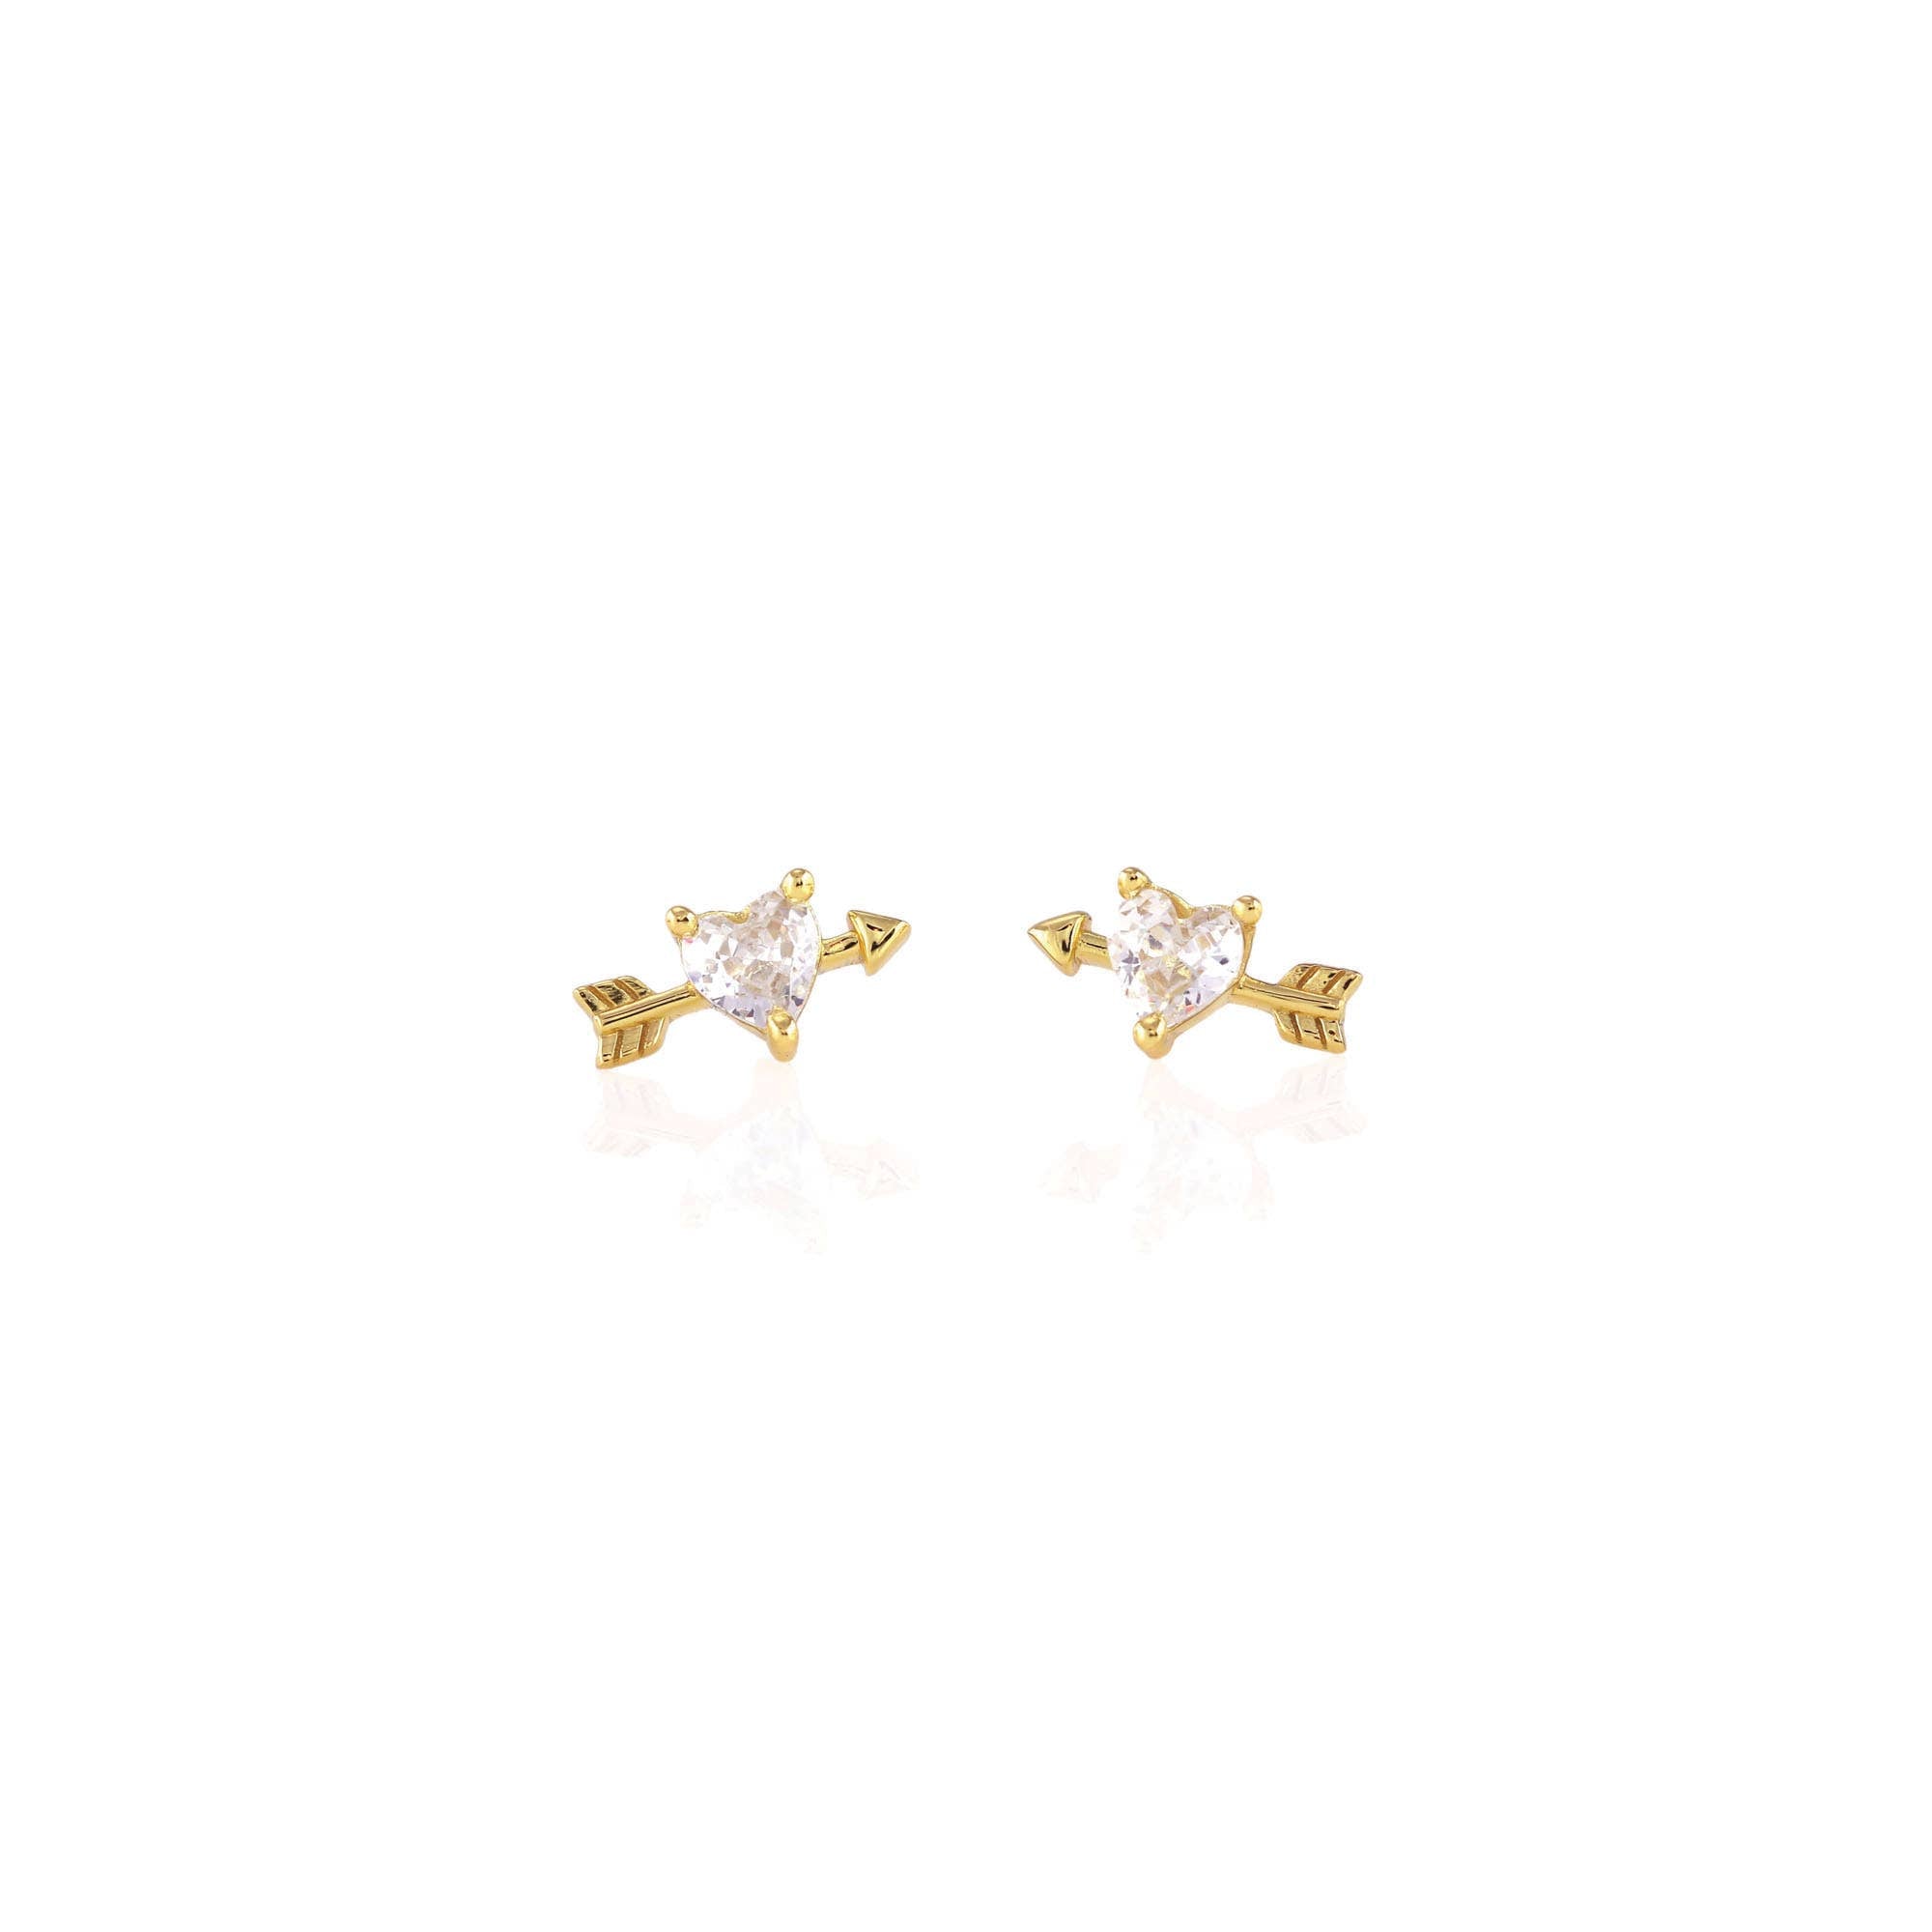 Cupid's Heart Stud Earrings: 18K Gold Vermeil / Crystal